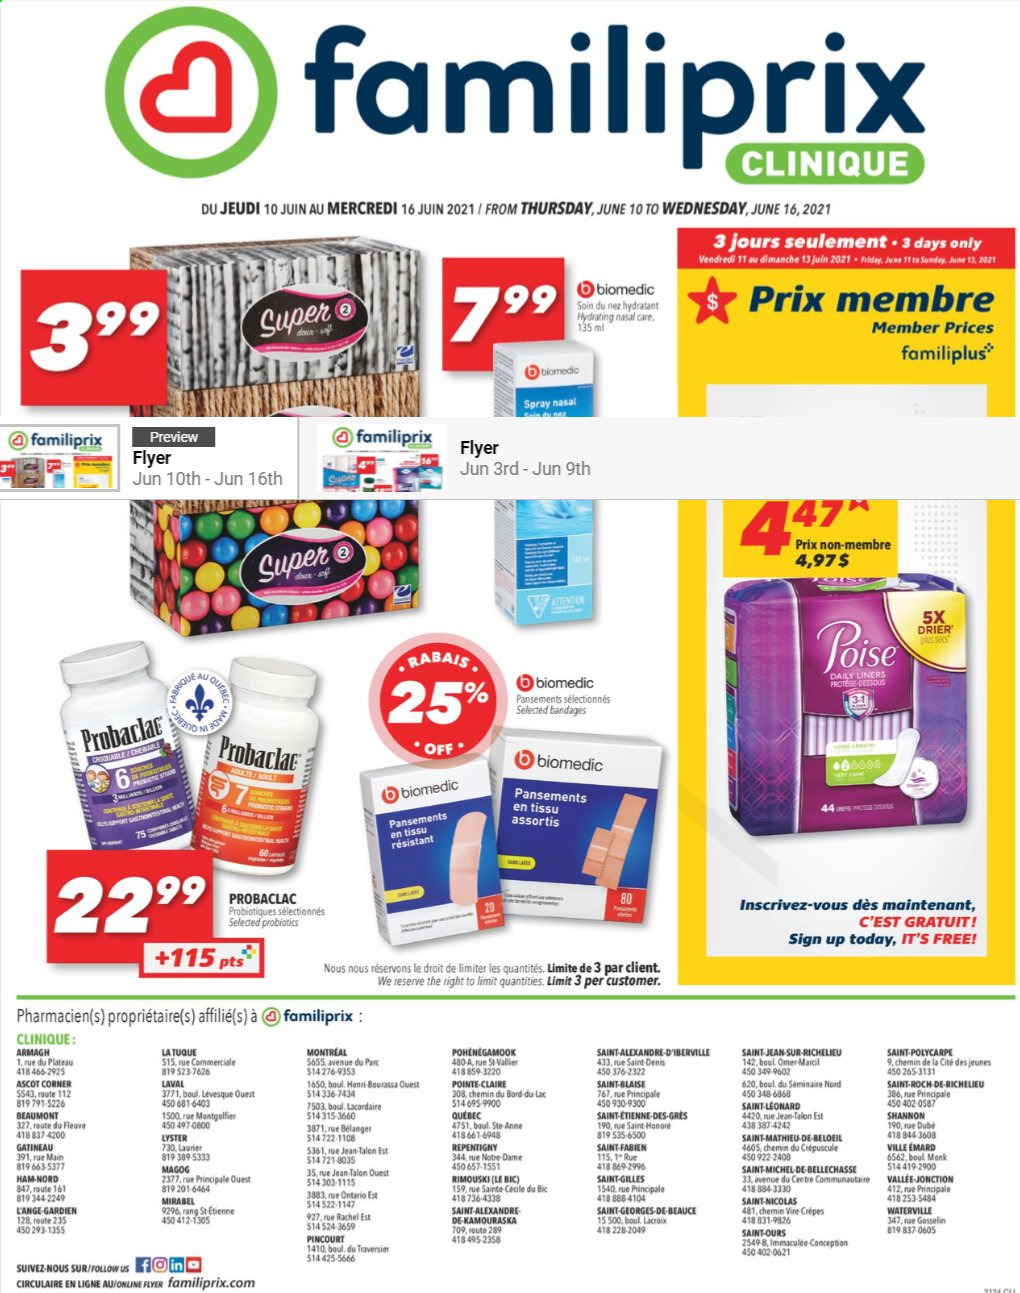 thumbnail - Familiprix Clinique Flyer - June 10, 2021 - June 16, 2021 - Sales products - Clinique, BIC, probiotics. Page 1.